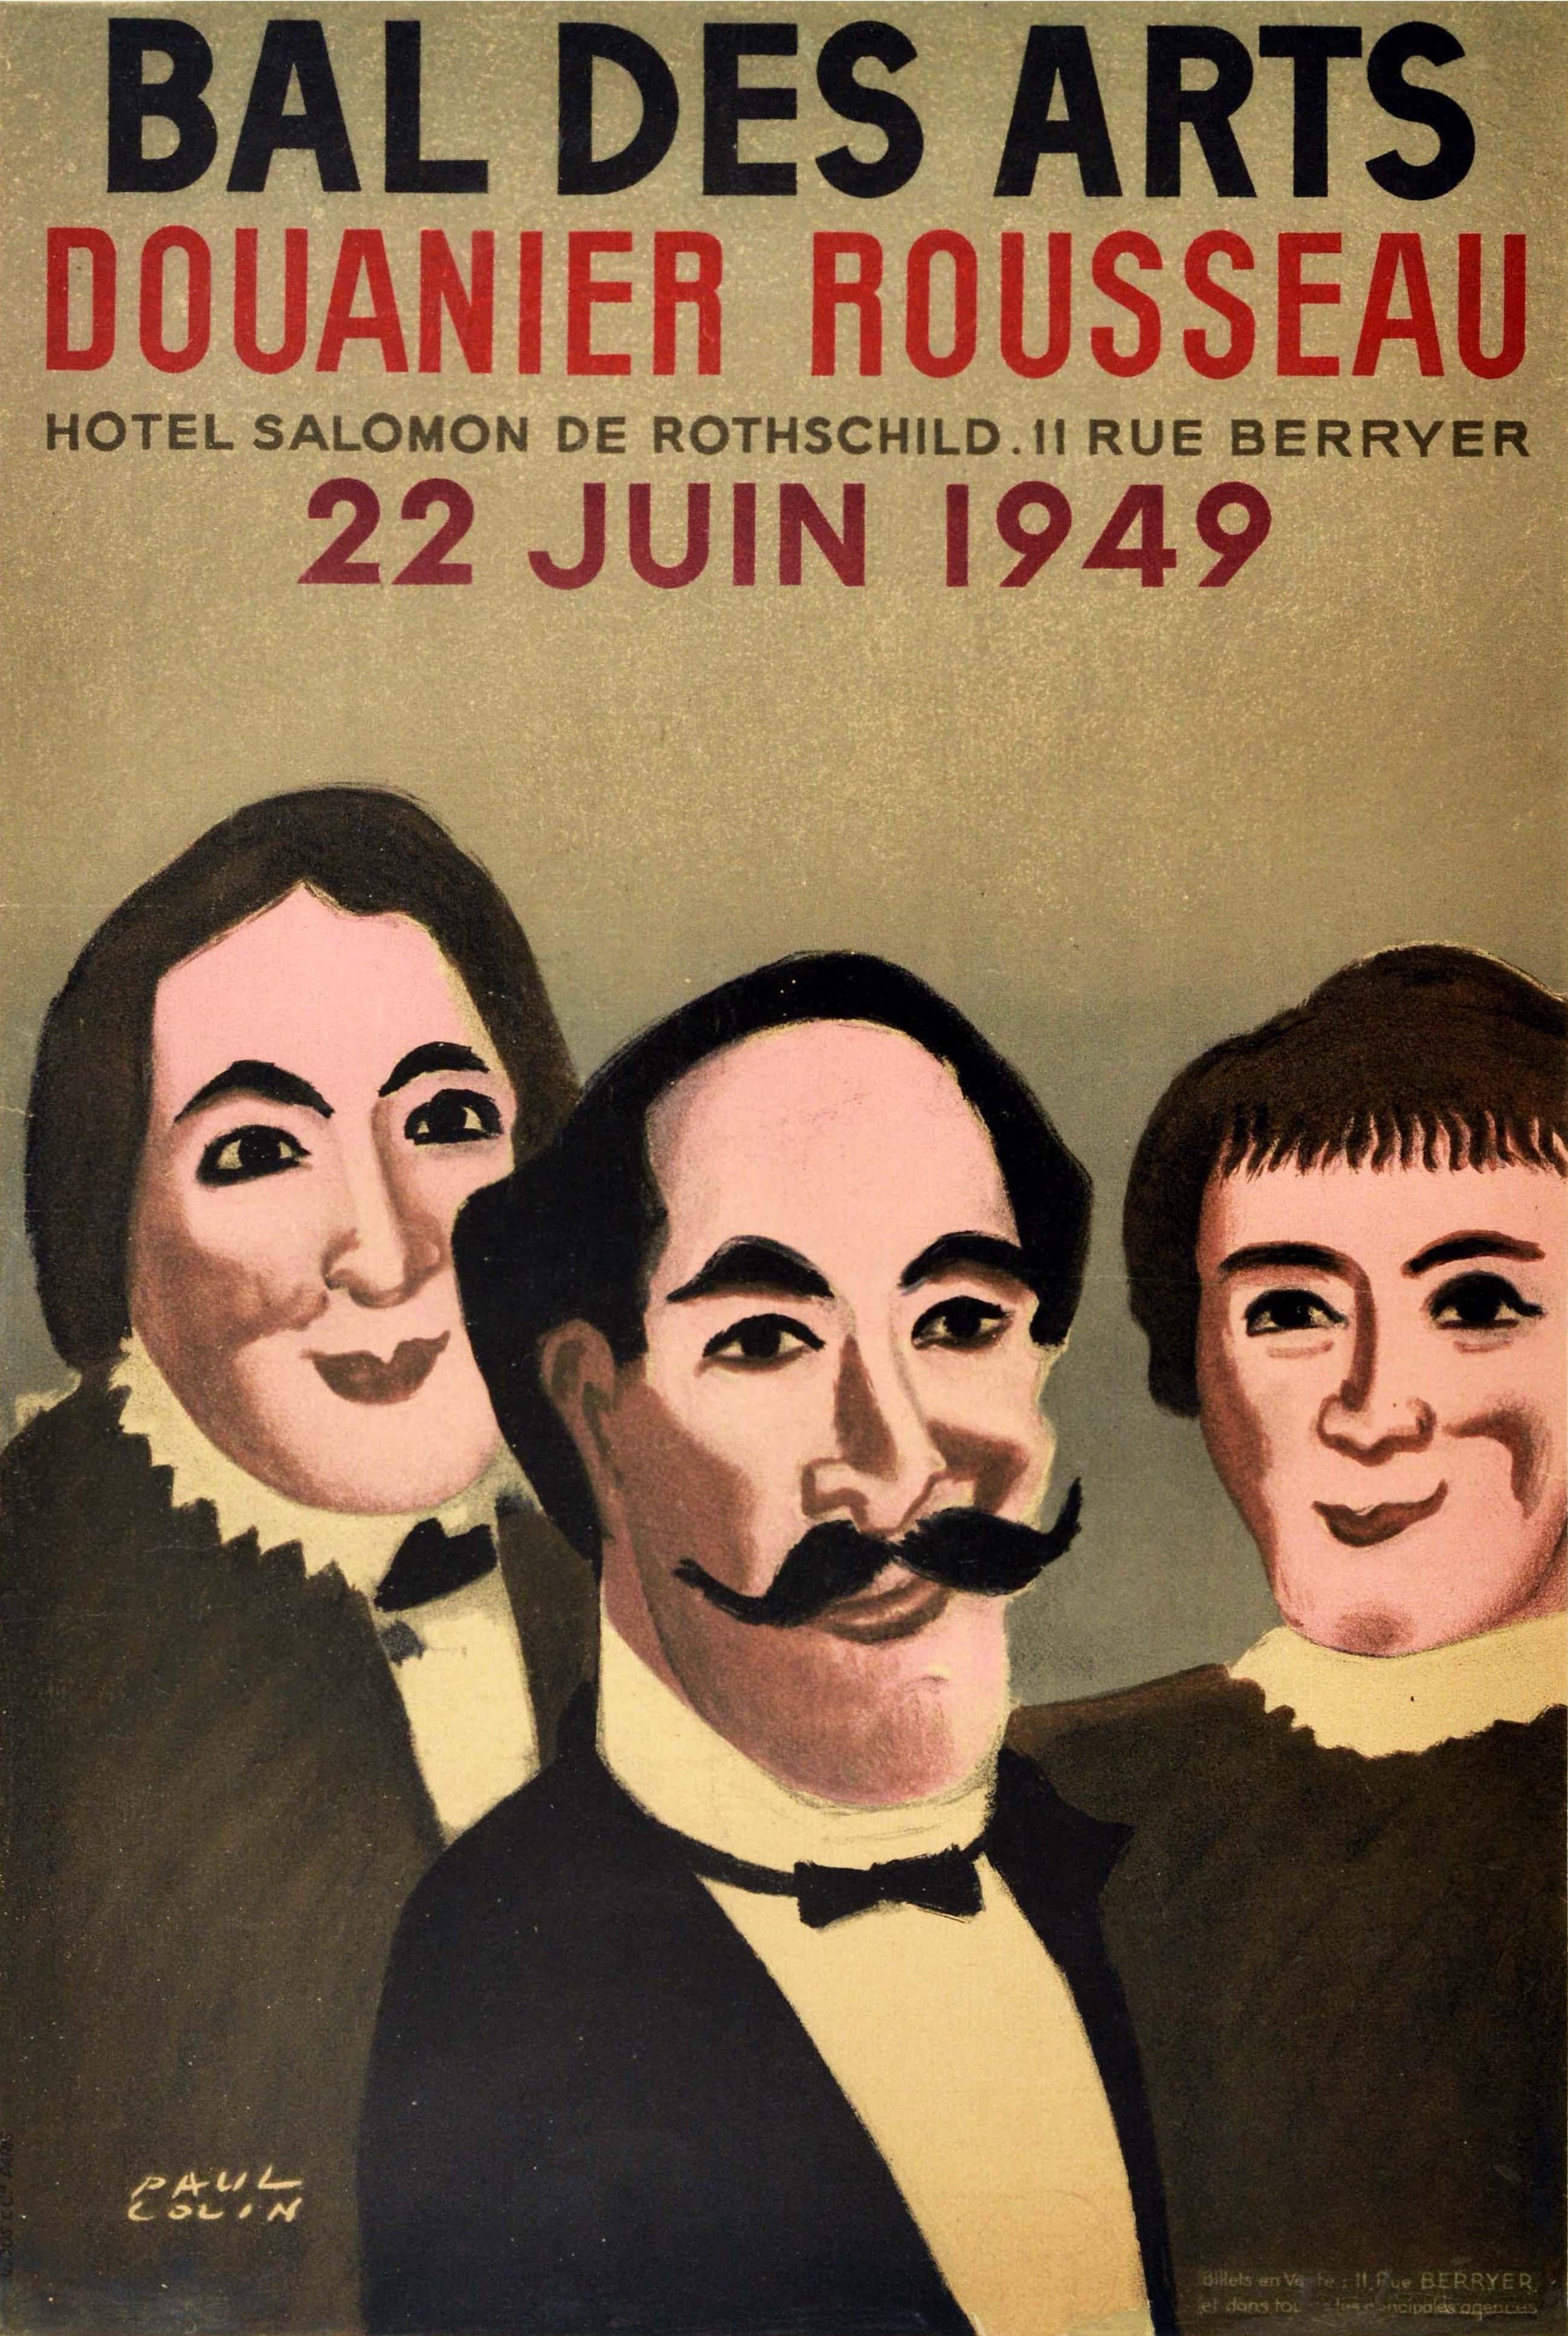 Paul Colin Print - Original Vintage Exhibition Poster Bal Des Arts Douanier Rousseau Naive Artist